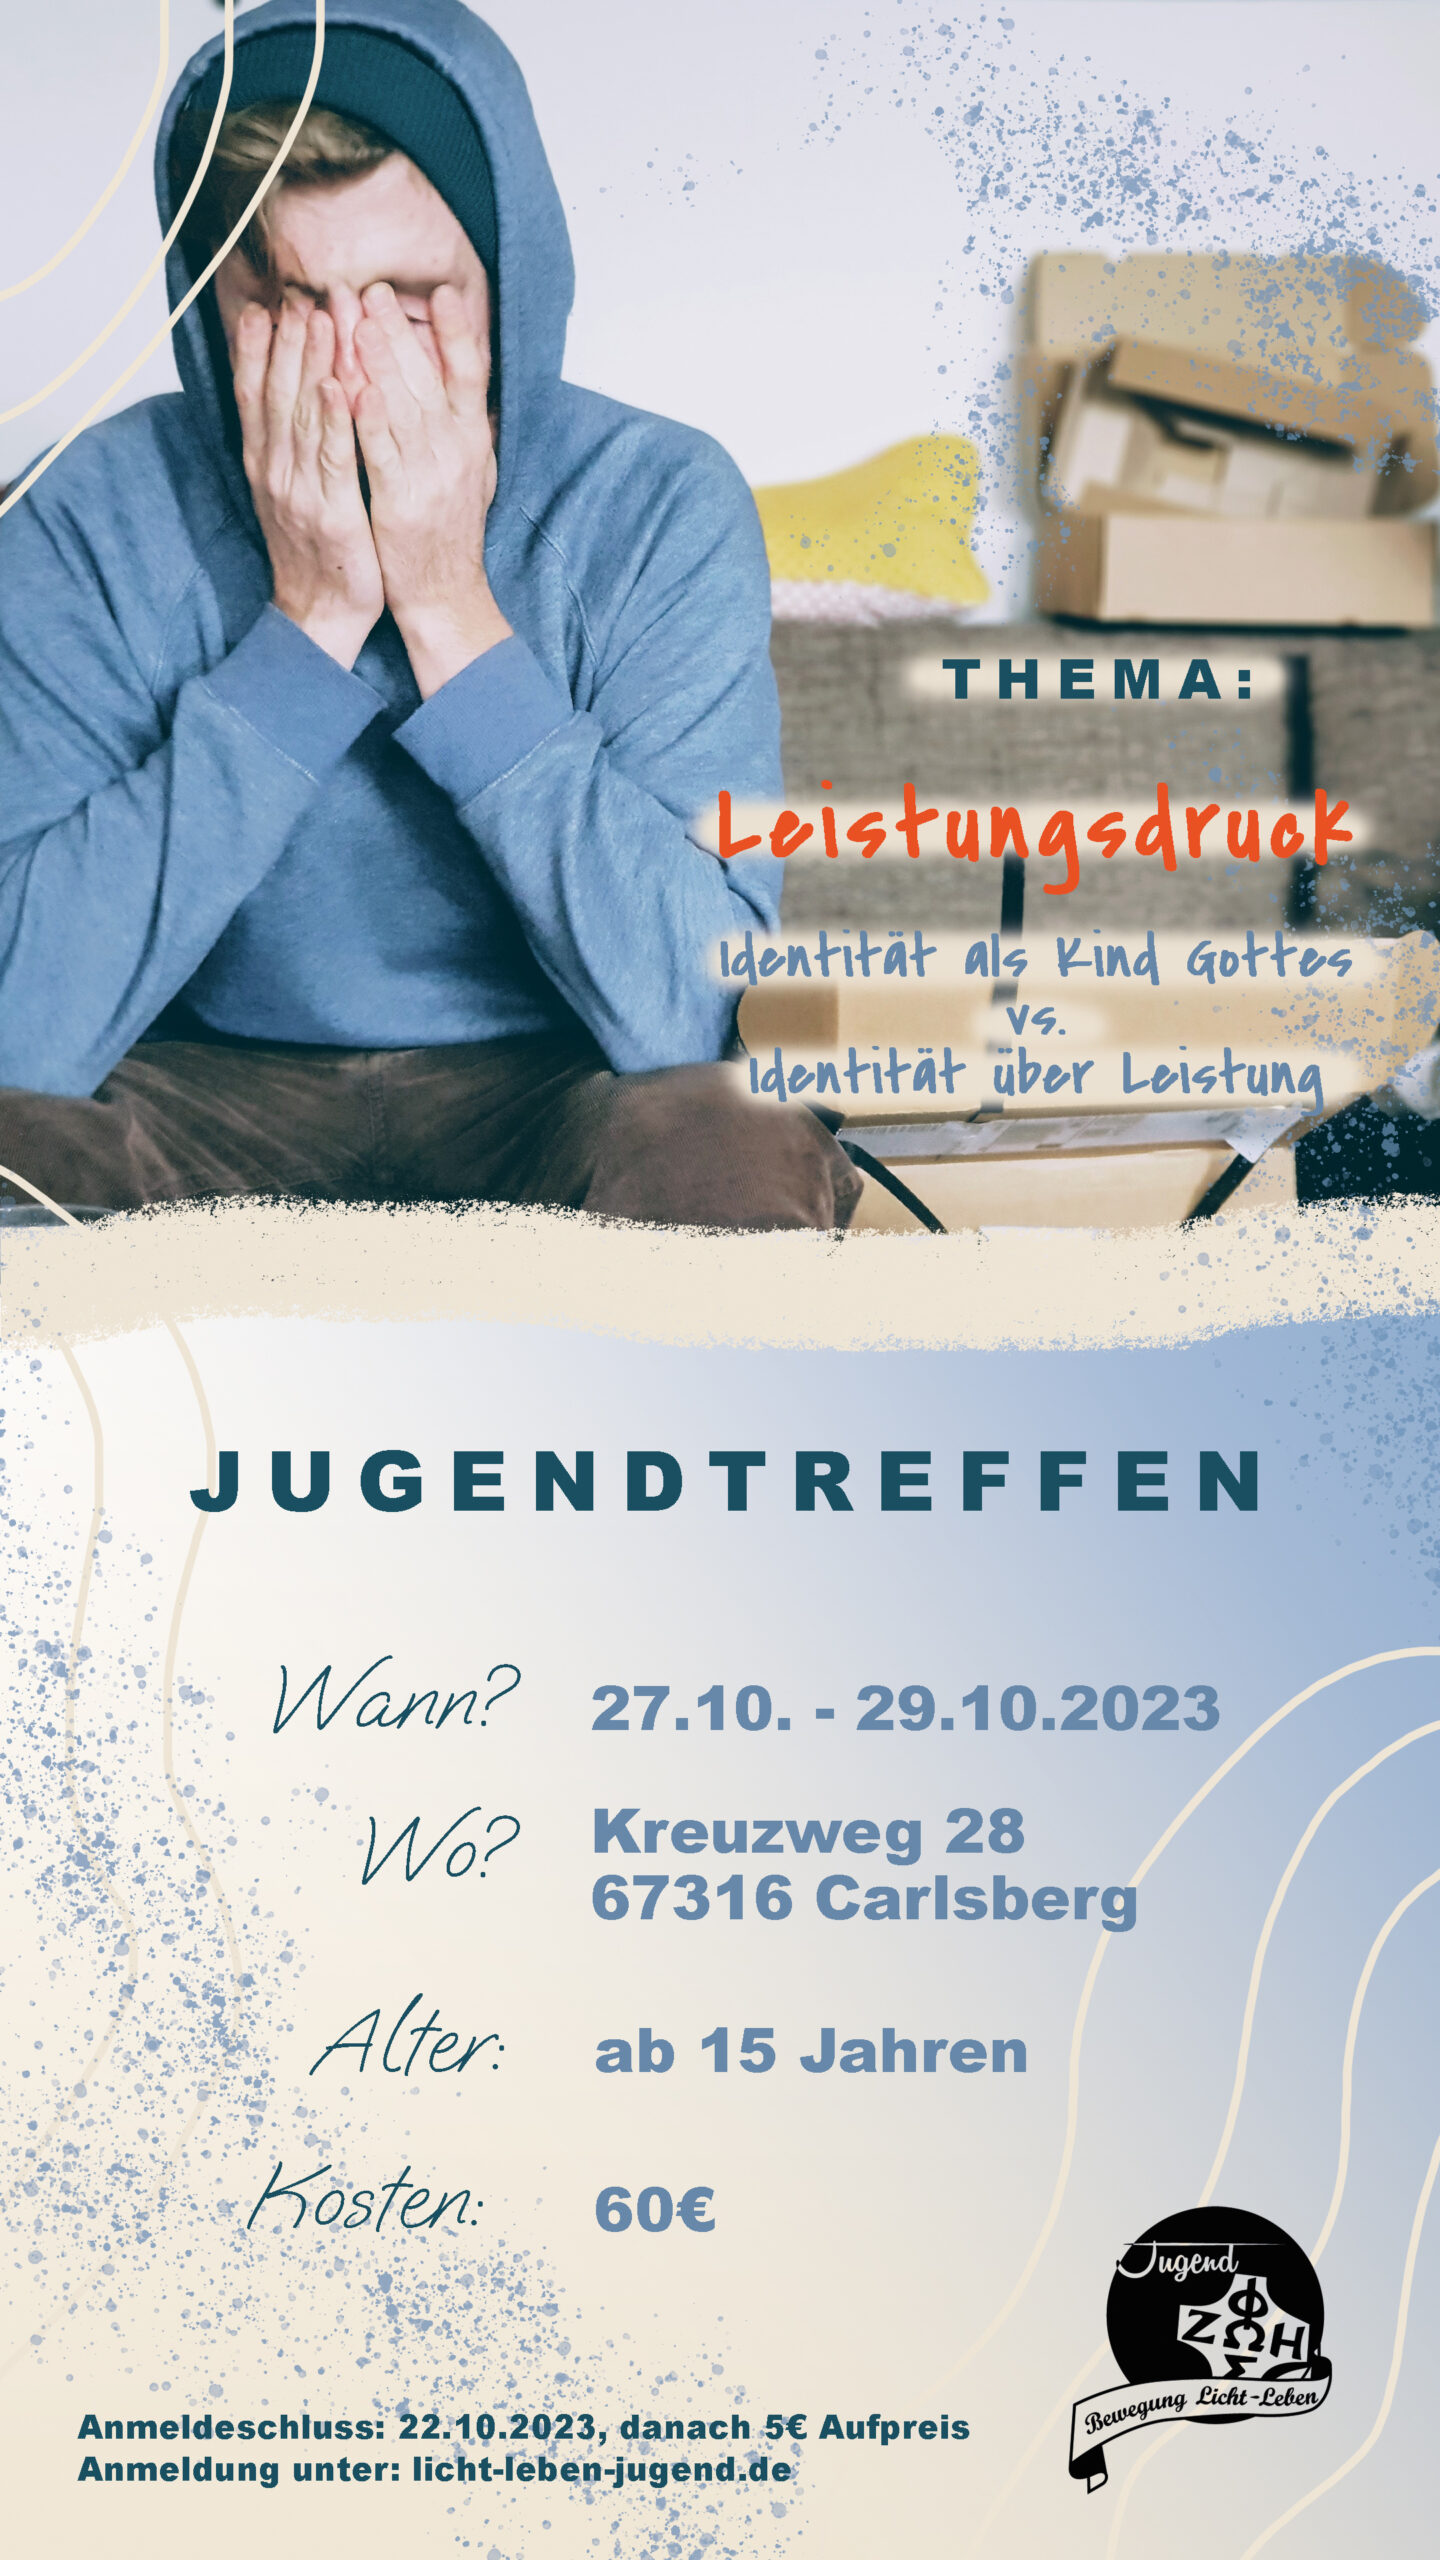 Spotkanie młodzieżowe w Carlsbergu (27.-29.10.2023)